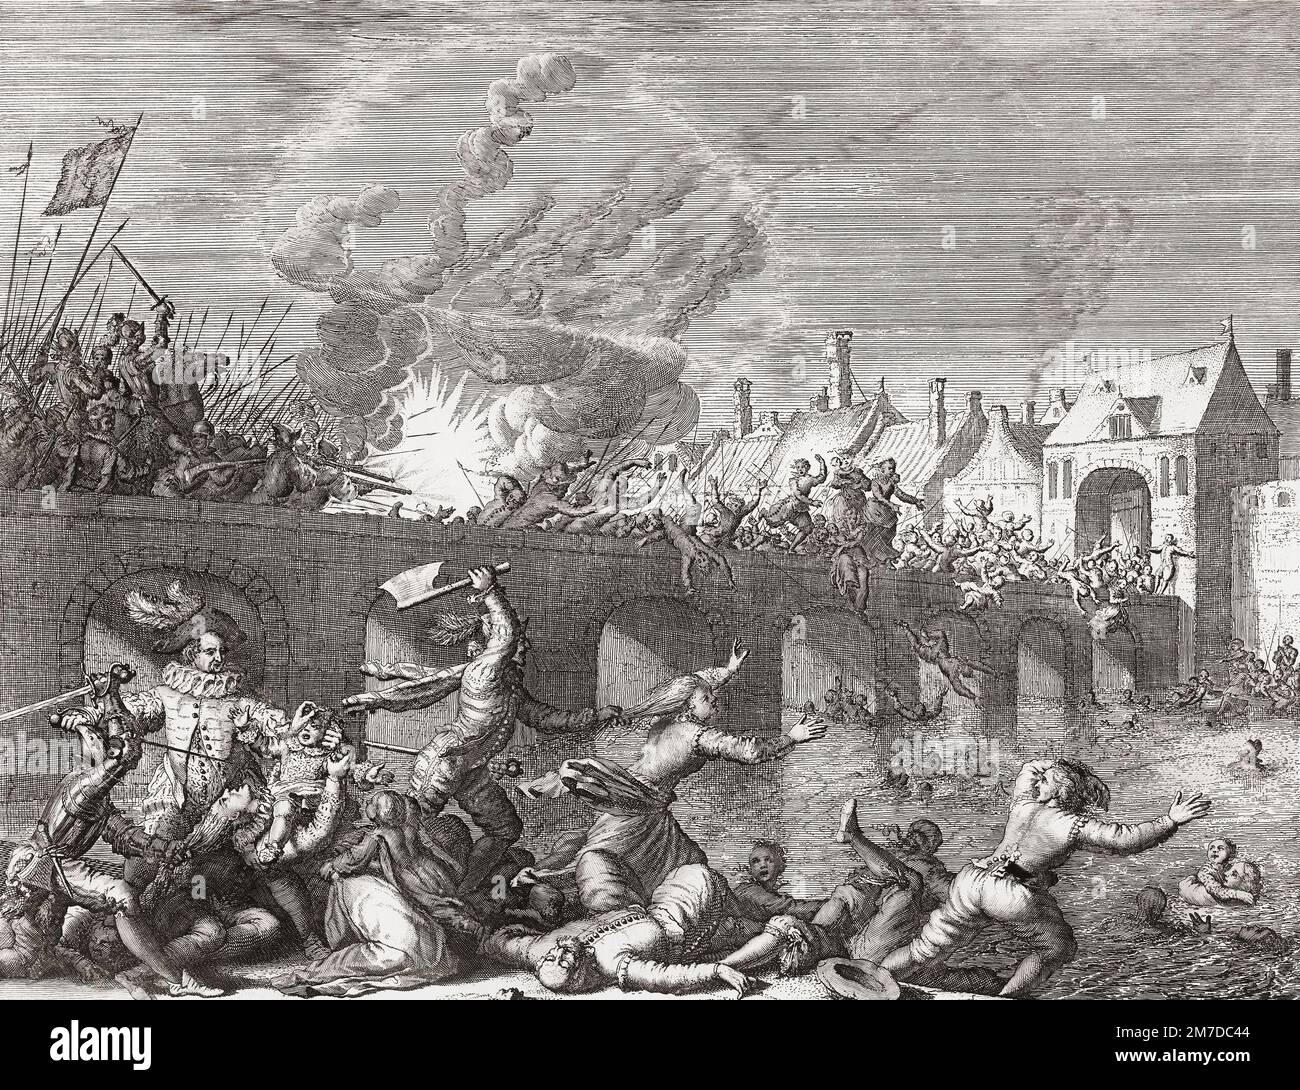 Das Massaker der Spanier in Maastricht am 29. Juni 1579 während des Achtjährigen Krieges, nach einem Abdruck von Jan Luyken. Das Bild zeigt den Moment, nachdem die Truppen des Prinzen von Parma in die Stadt einbrachen und Soldaten und Bürger auf die Brücke über die Maas jagten. Stockfoto